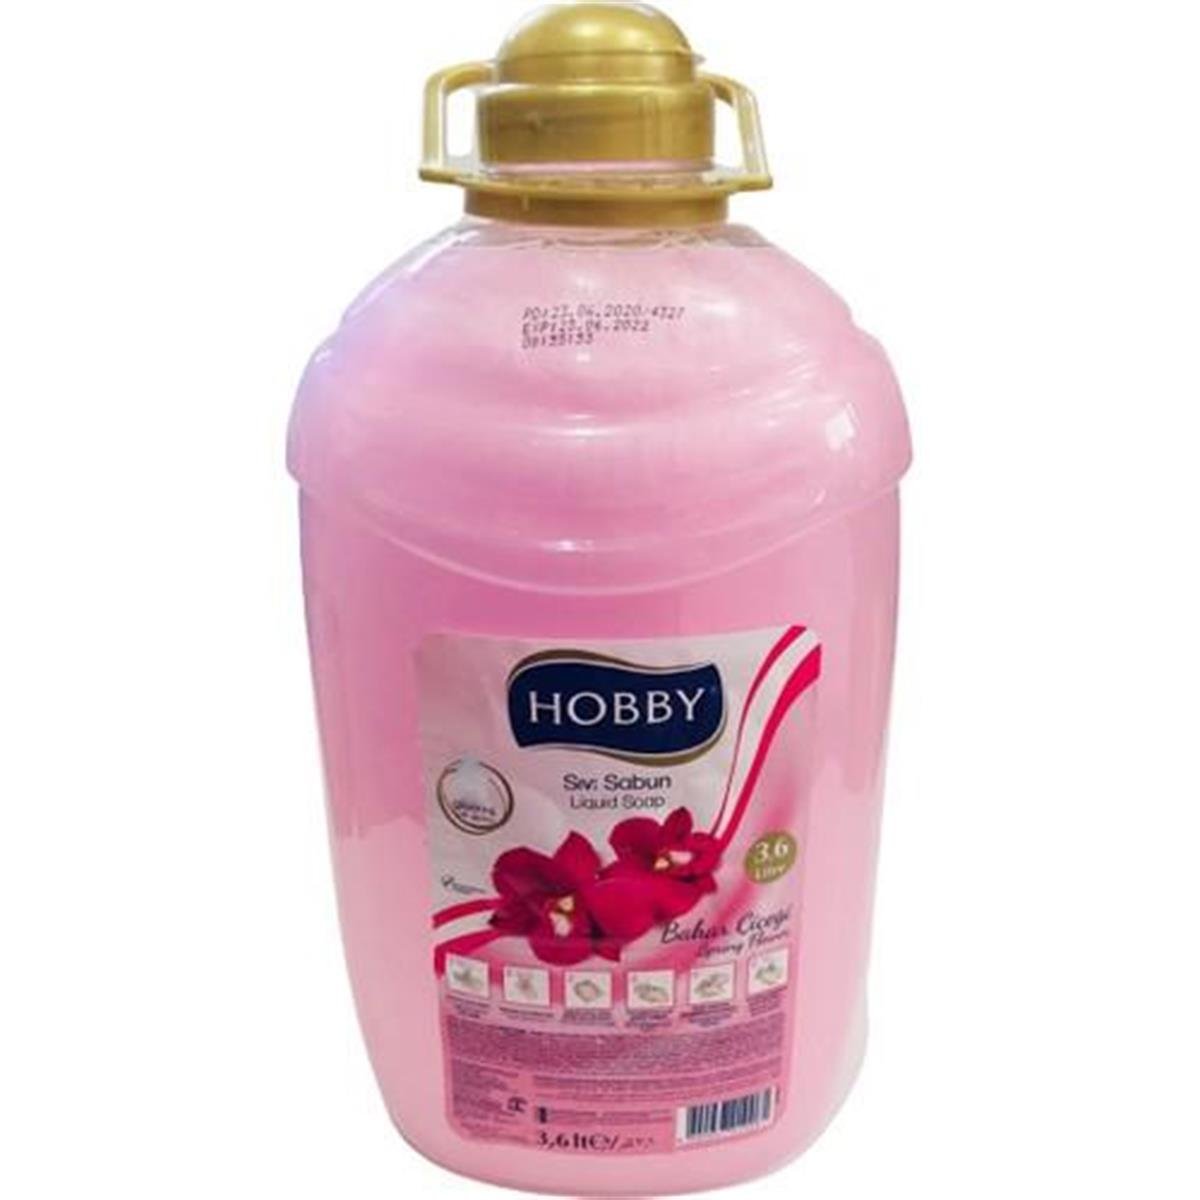 Hobby Bahar Çiçeği Sıvı Sabun 3,6 Lt 1 Ad - Proteda.com | Ambalaj ve  Temizlik Ürünleri ve Fiyatları